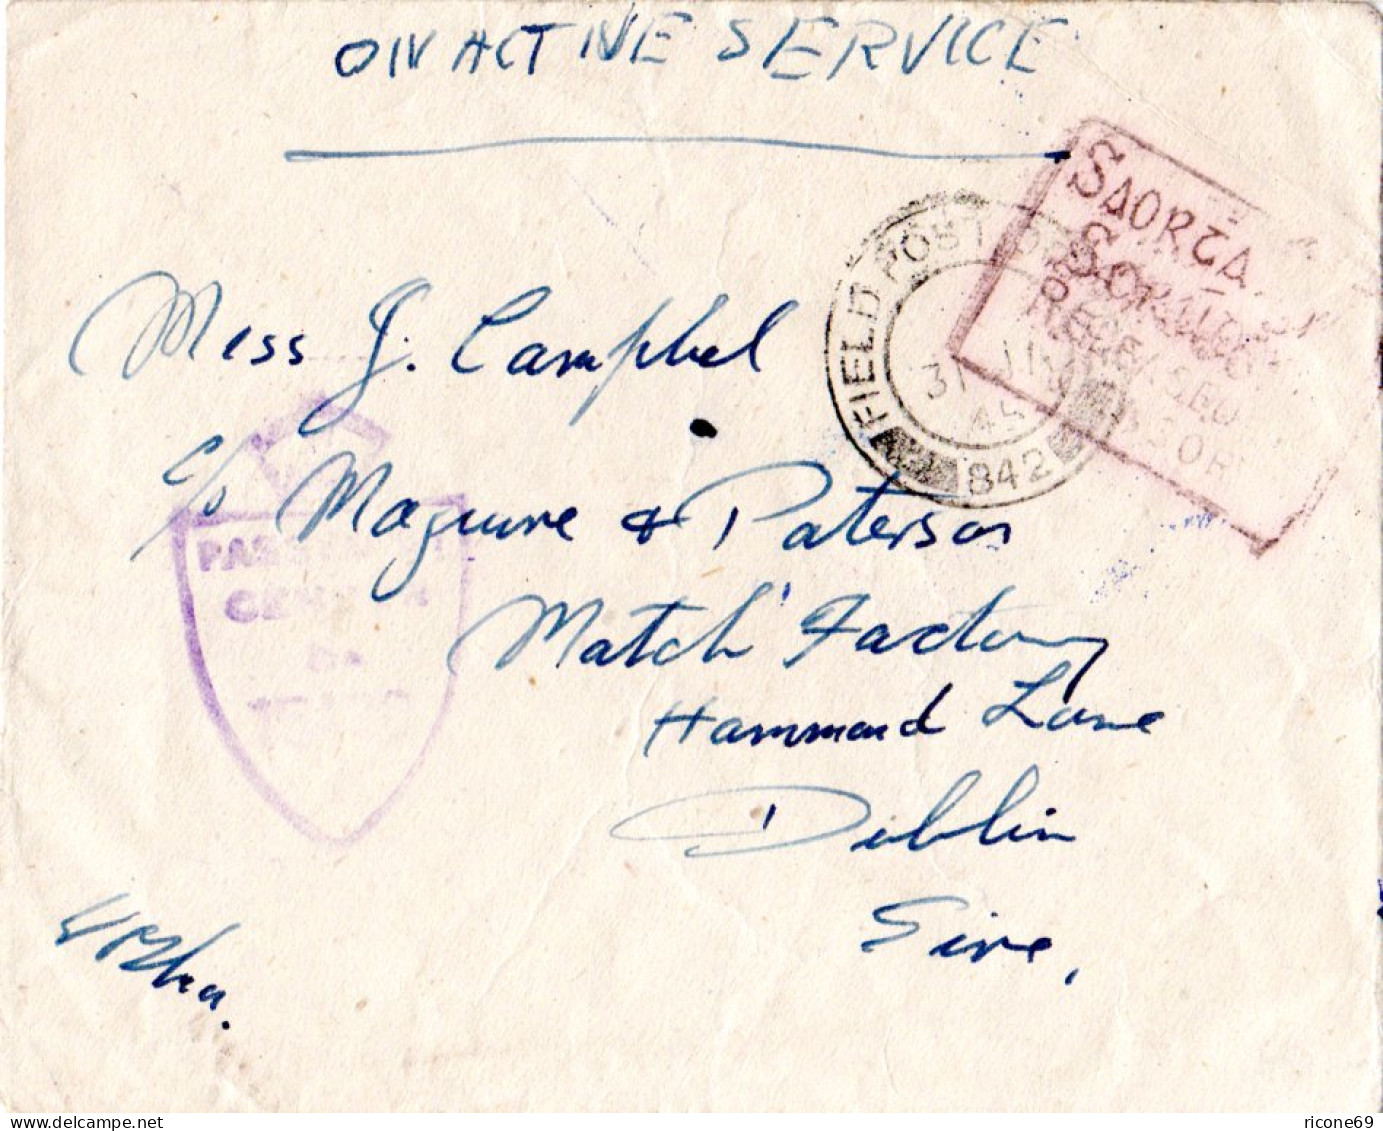 Irland 1944, FPO 842, Feldpost Brief M. Irischer Zensur Released By Censor - Briefe U. Dokumente